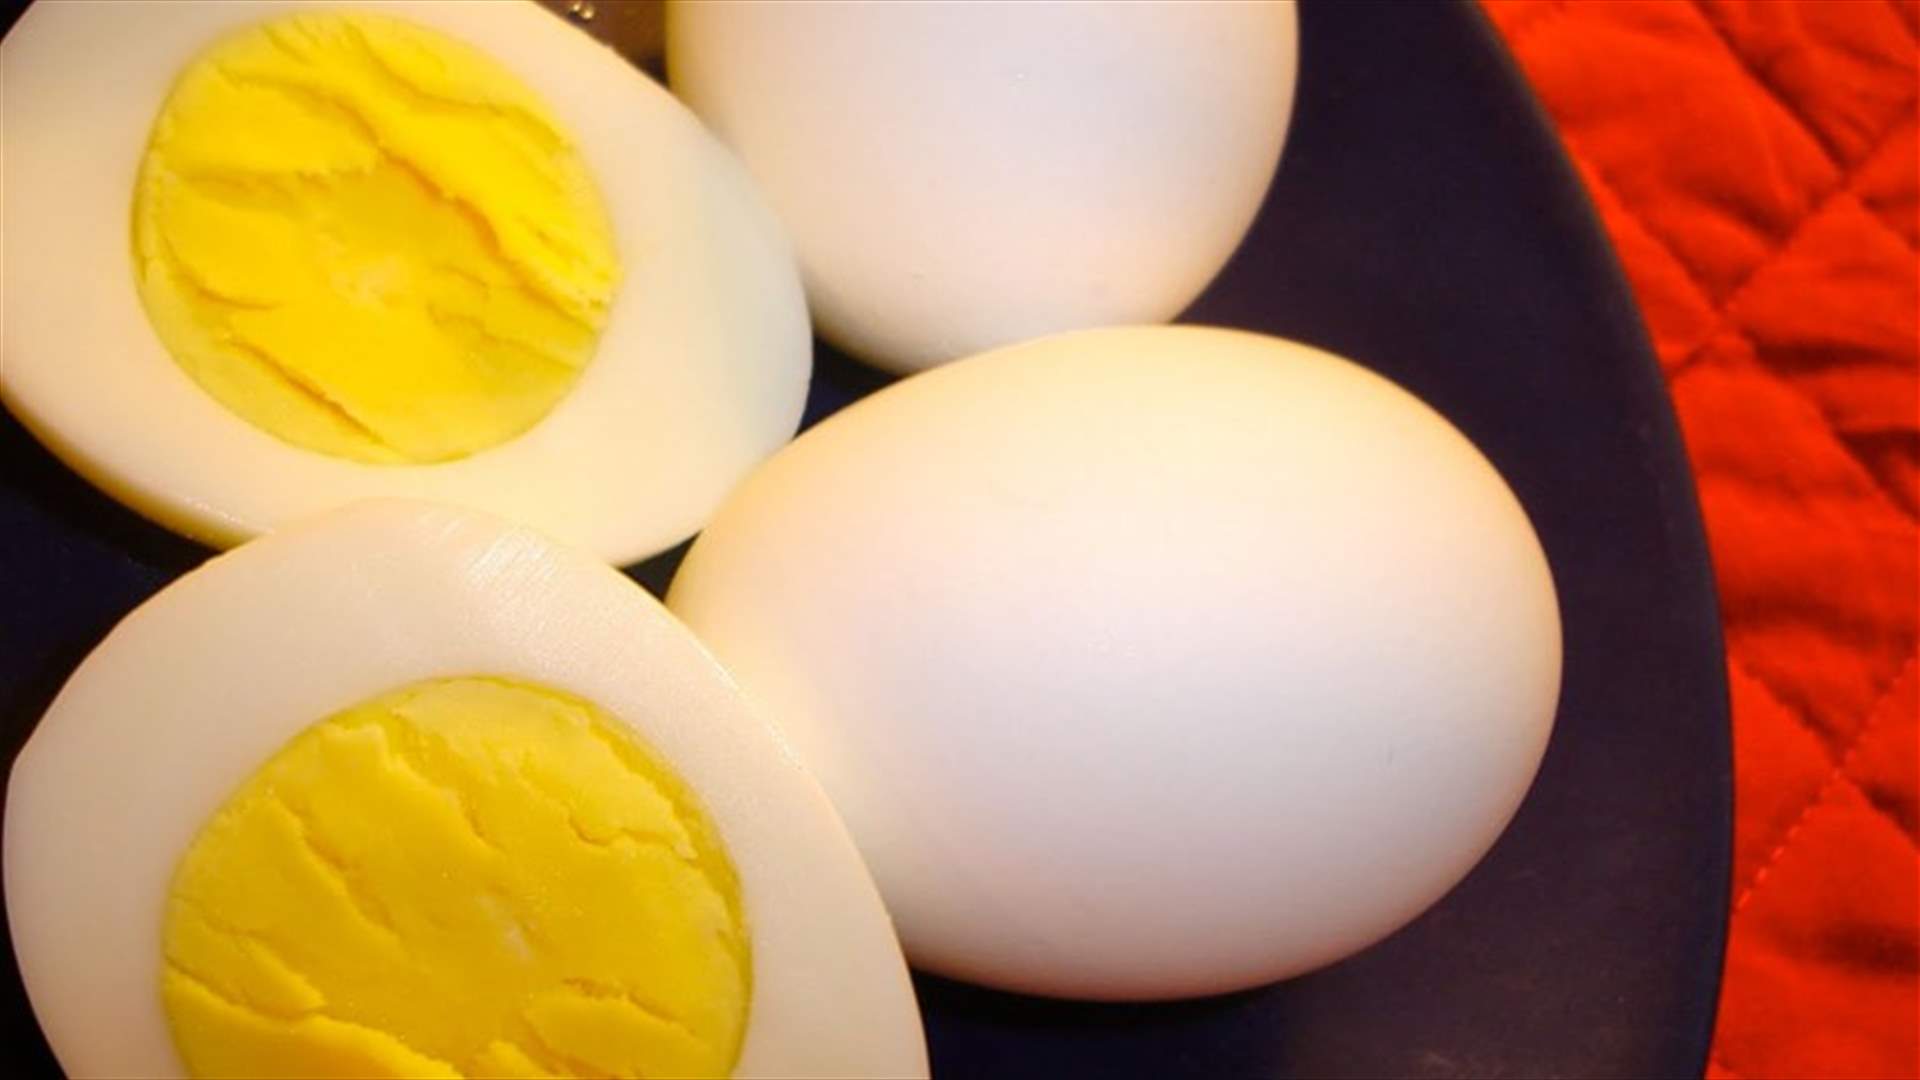 بالفيديو: خدعة بسيطة لتقشير البيض المسلوق